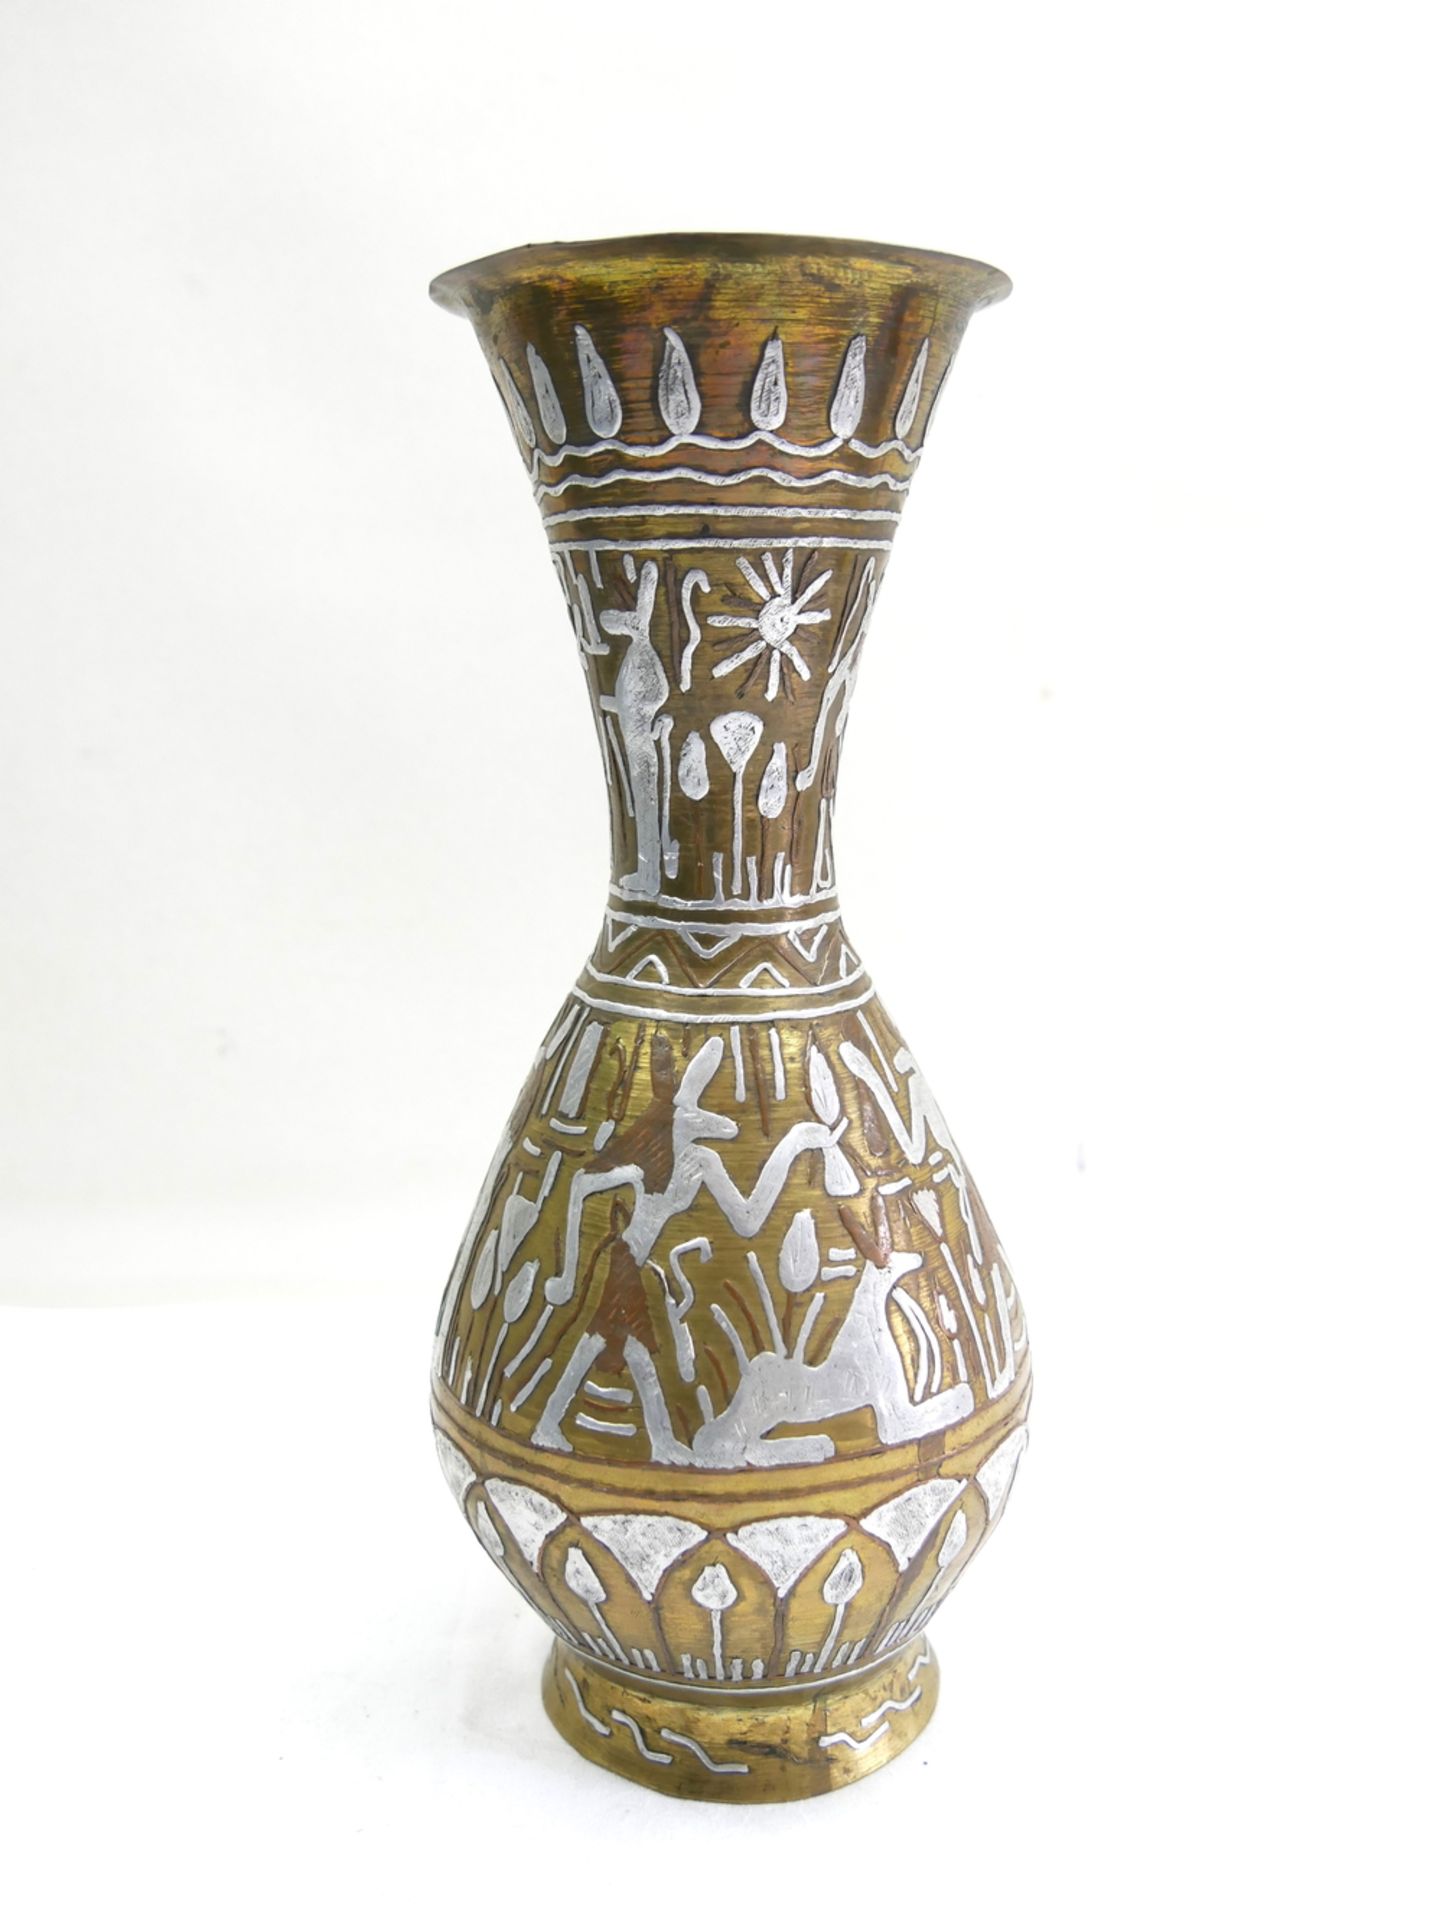 Antike ägyptische handgehämmerte Messing Vase mit Intarsien von Hieroglyphen Figuren in Silber und